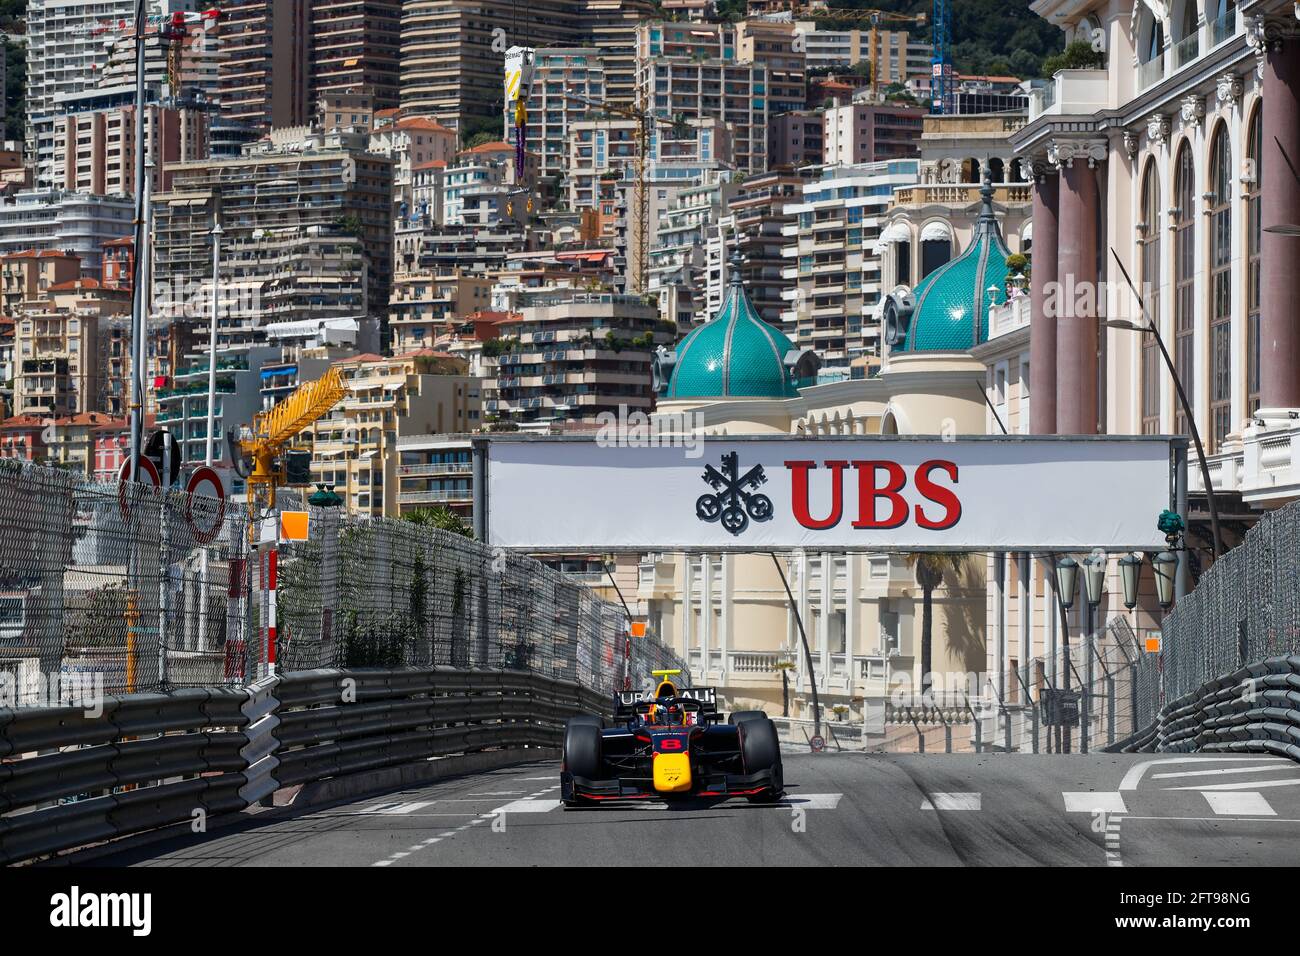 08 VIPs Juri (est), Hitech Grand Prix, Dallara F2, Action während der FIA Formel 2-Meisterschaft 2021 in Monaco vom 21. Bis 23. Mai - Foto Florent Gooden / DPPI / LiveMedia Stockfoto